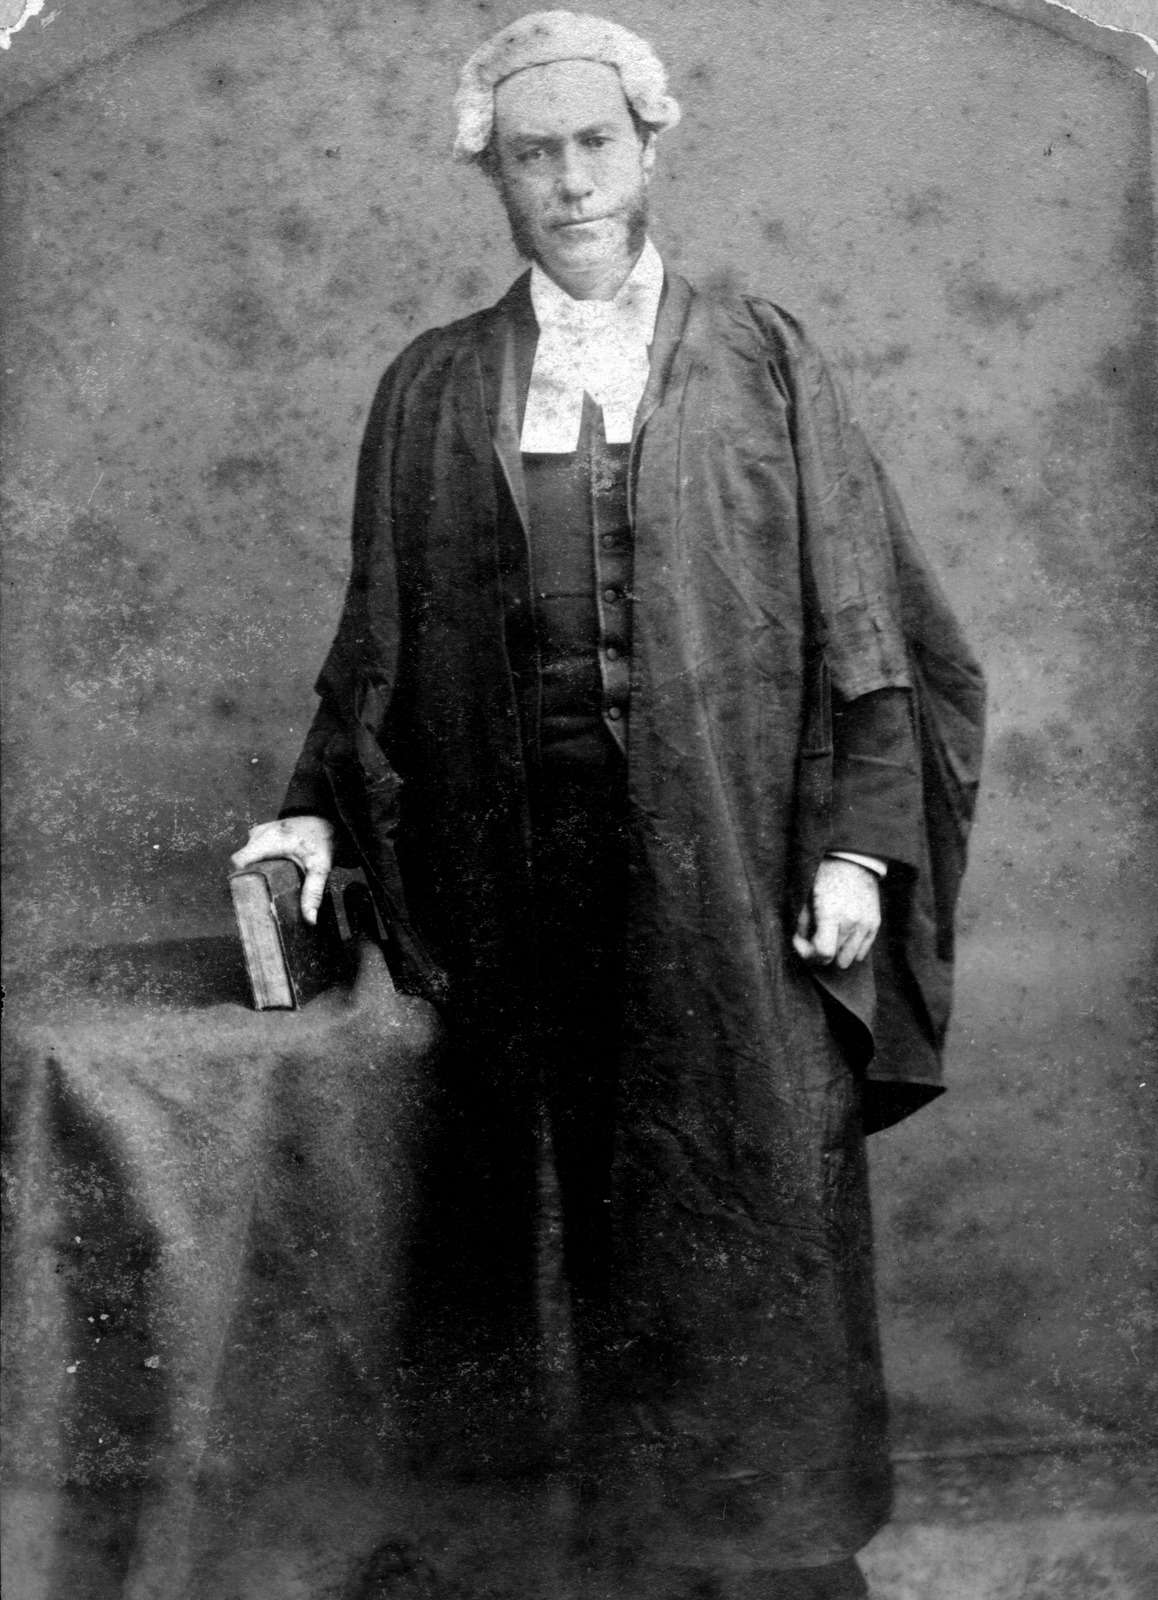 Judge George William Paul